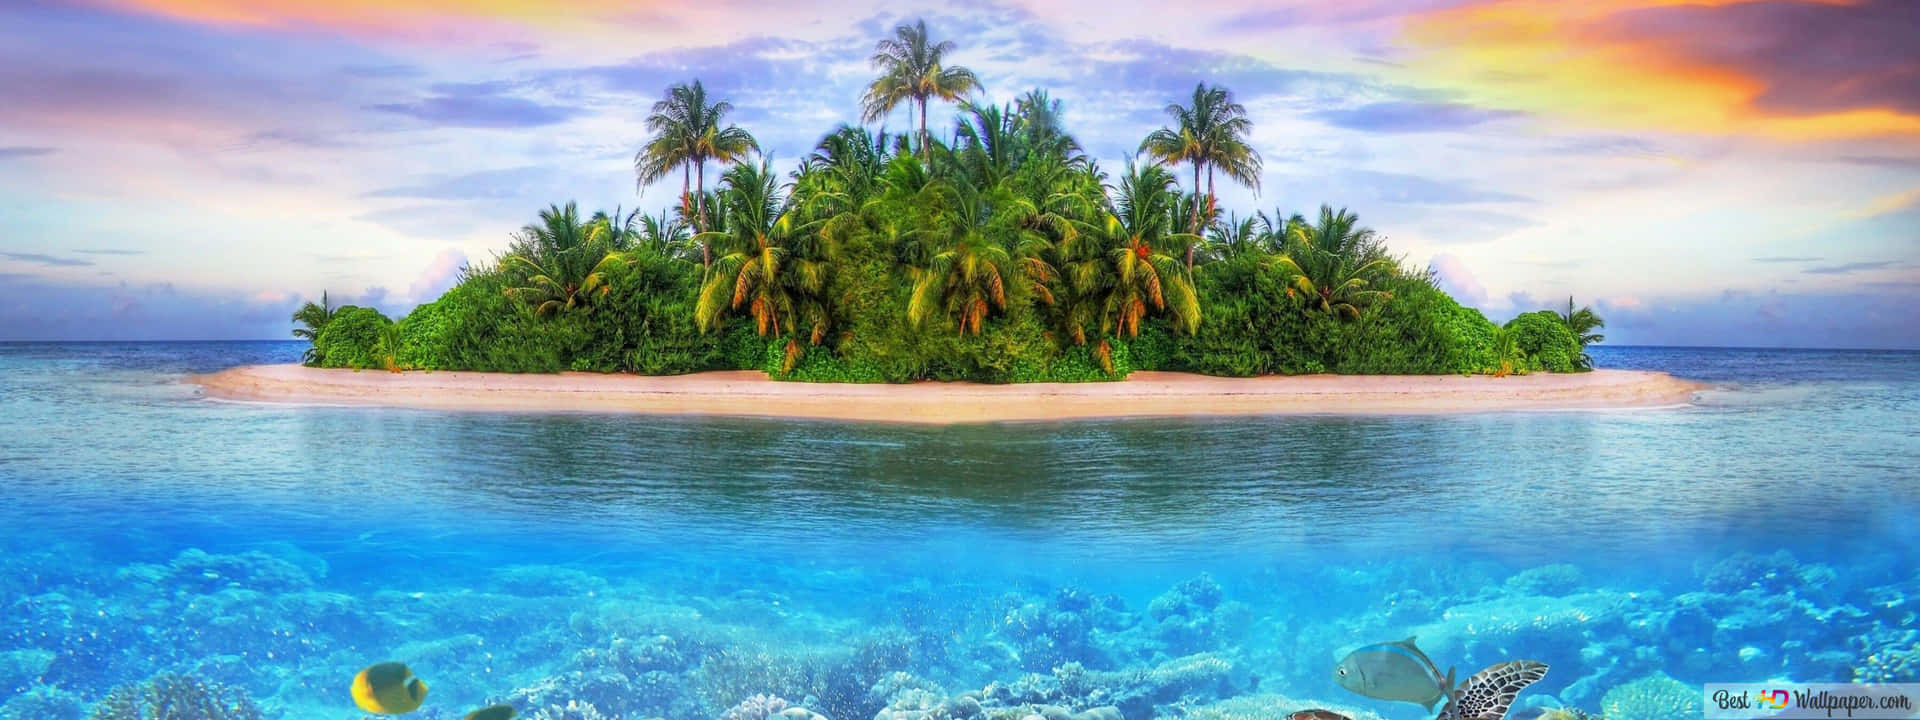 Eineinsel Mit Palmen Und Korallen Im Ozean. Wallpaper